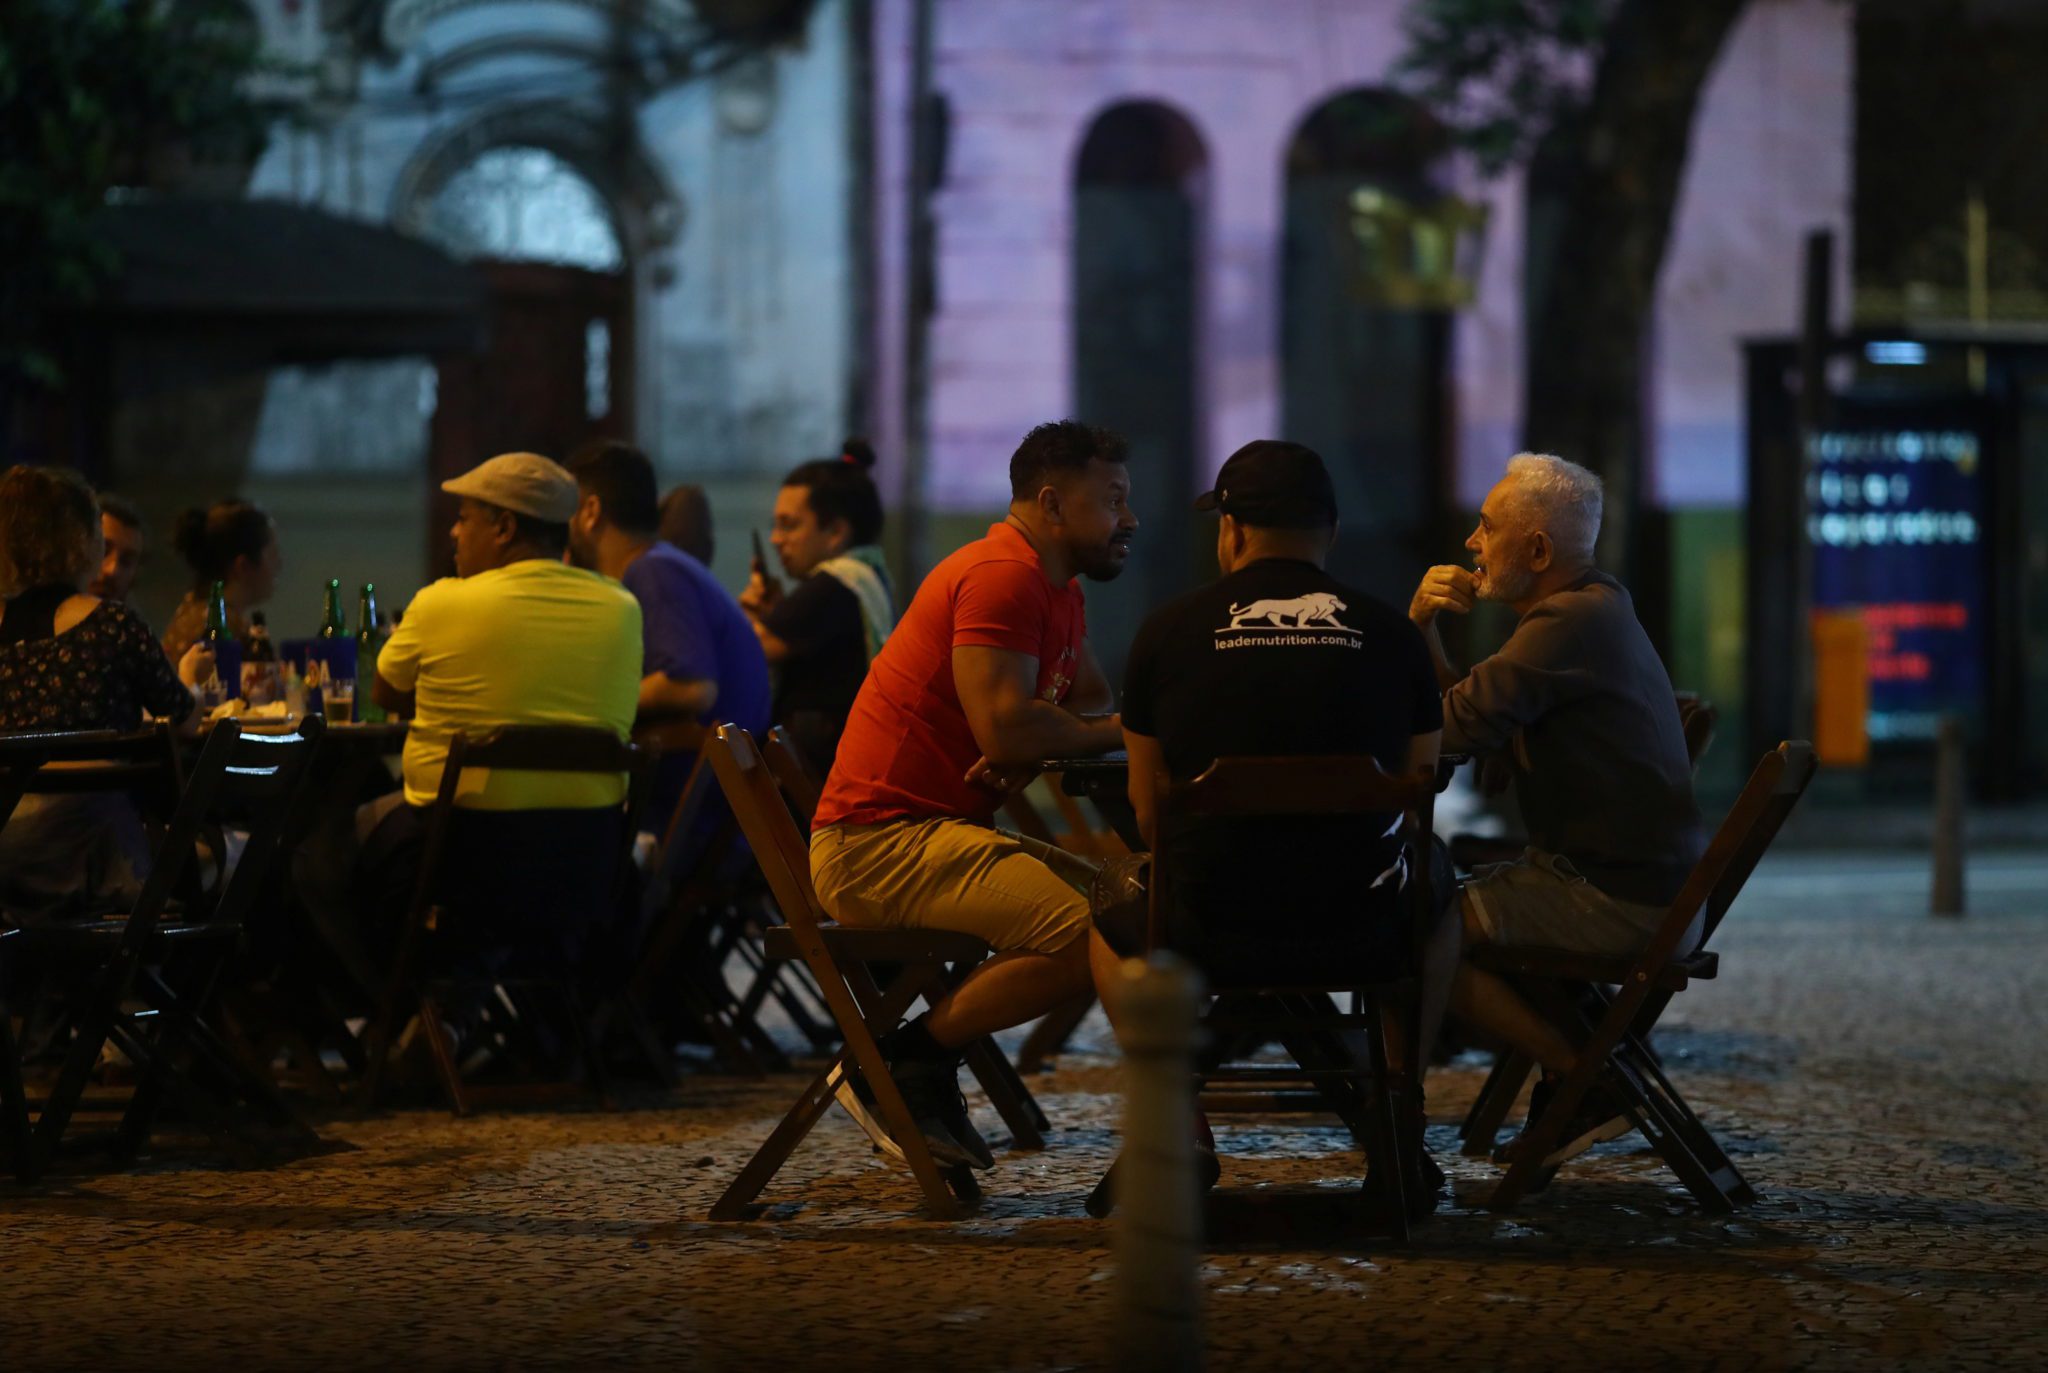 Consumidores em bar do Rio de Janeiro